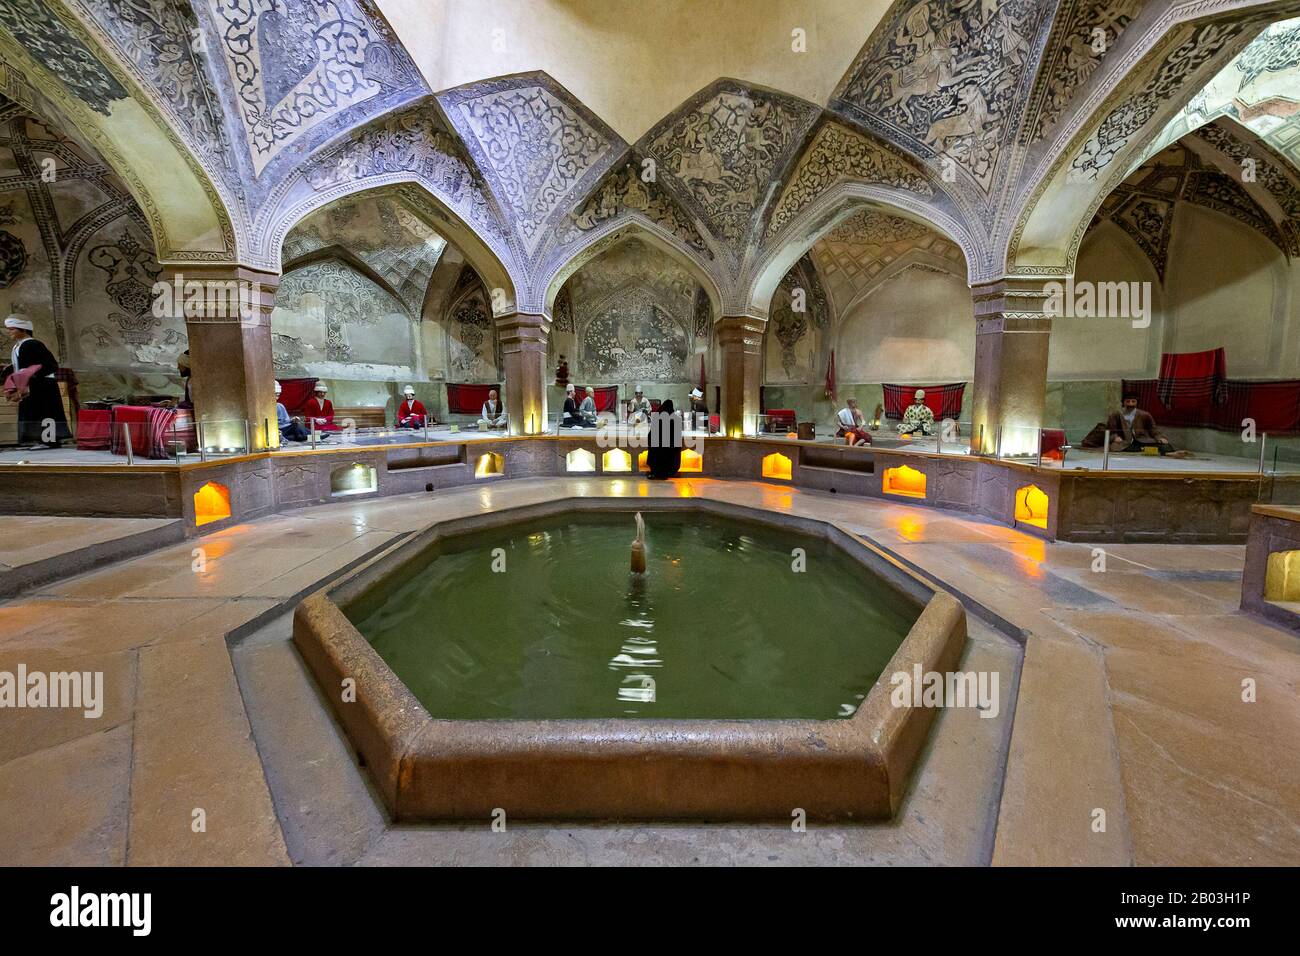 Vakil bath house in Shiraz, Iran Stock Photo